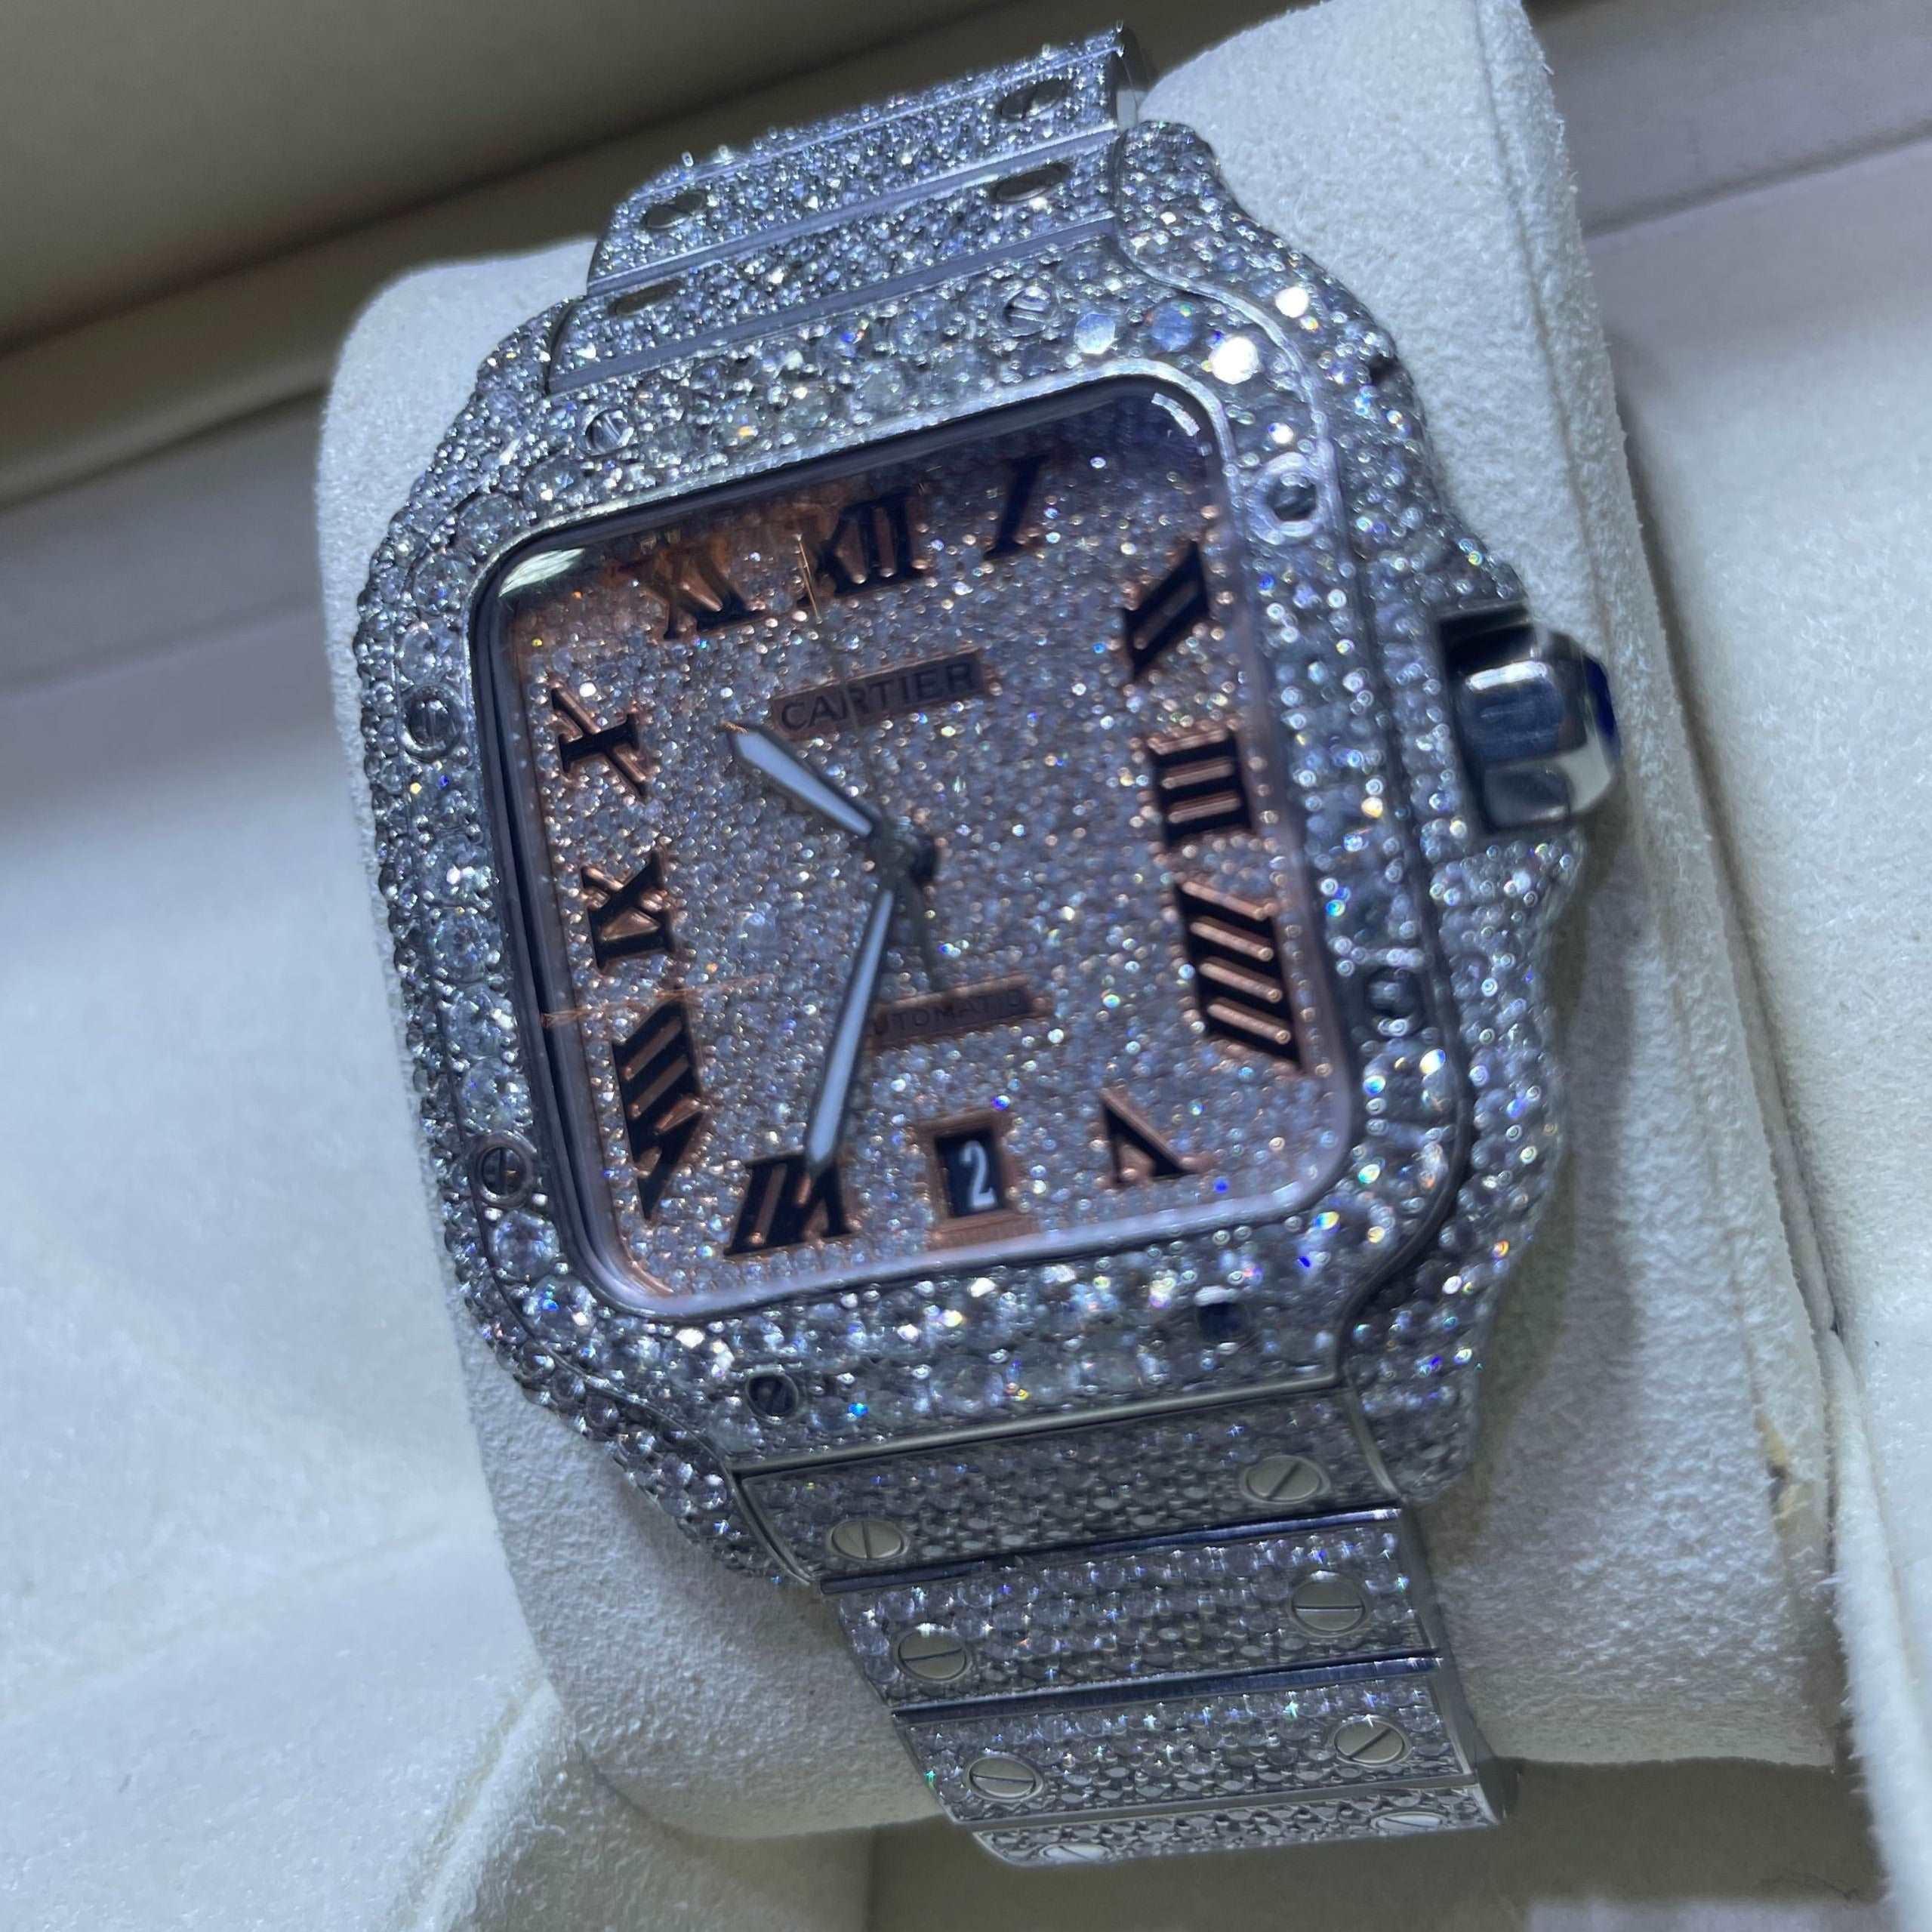 41mm Iced Out Cartier Watch Rose Gold | Rose Roman | Santos XL |